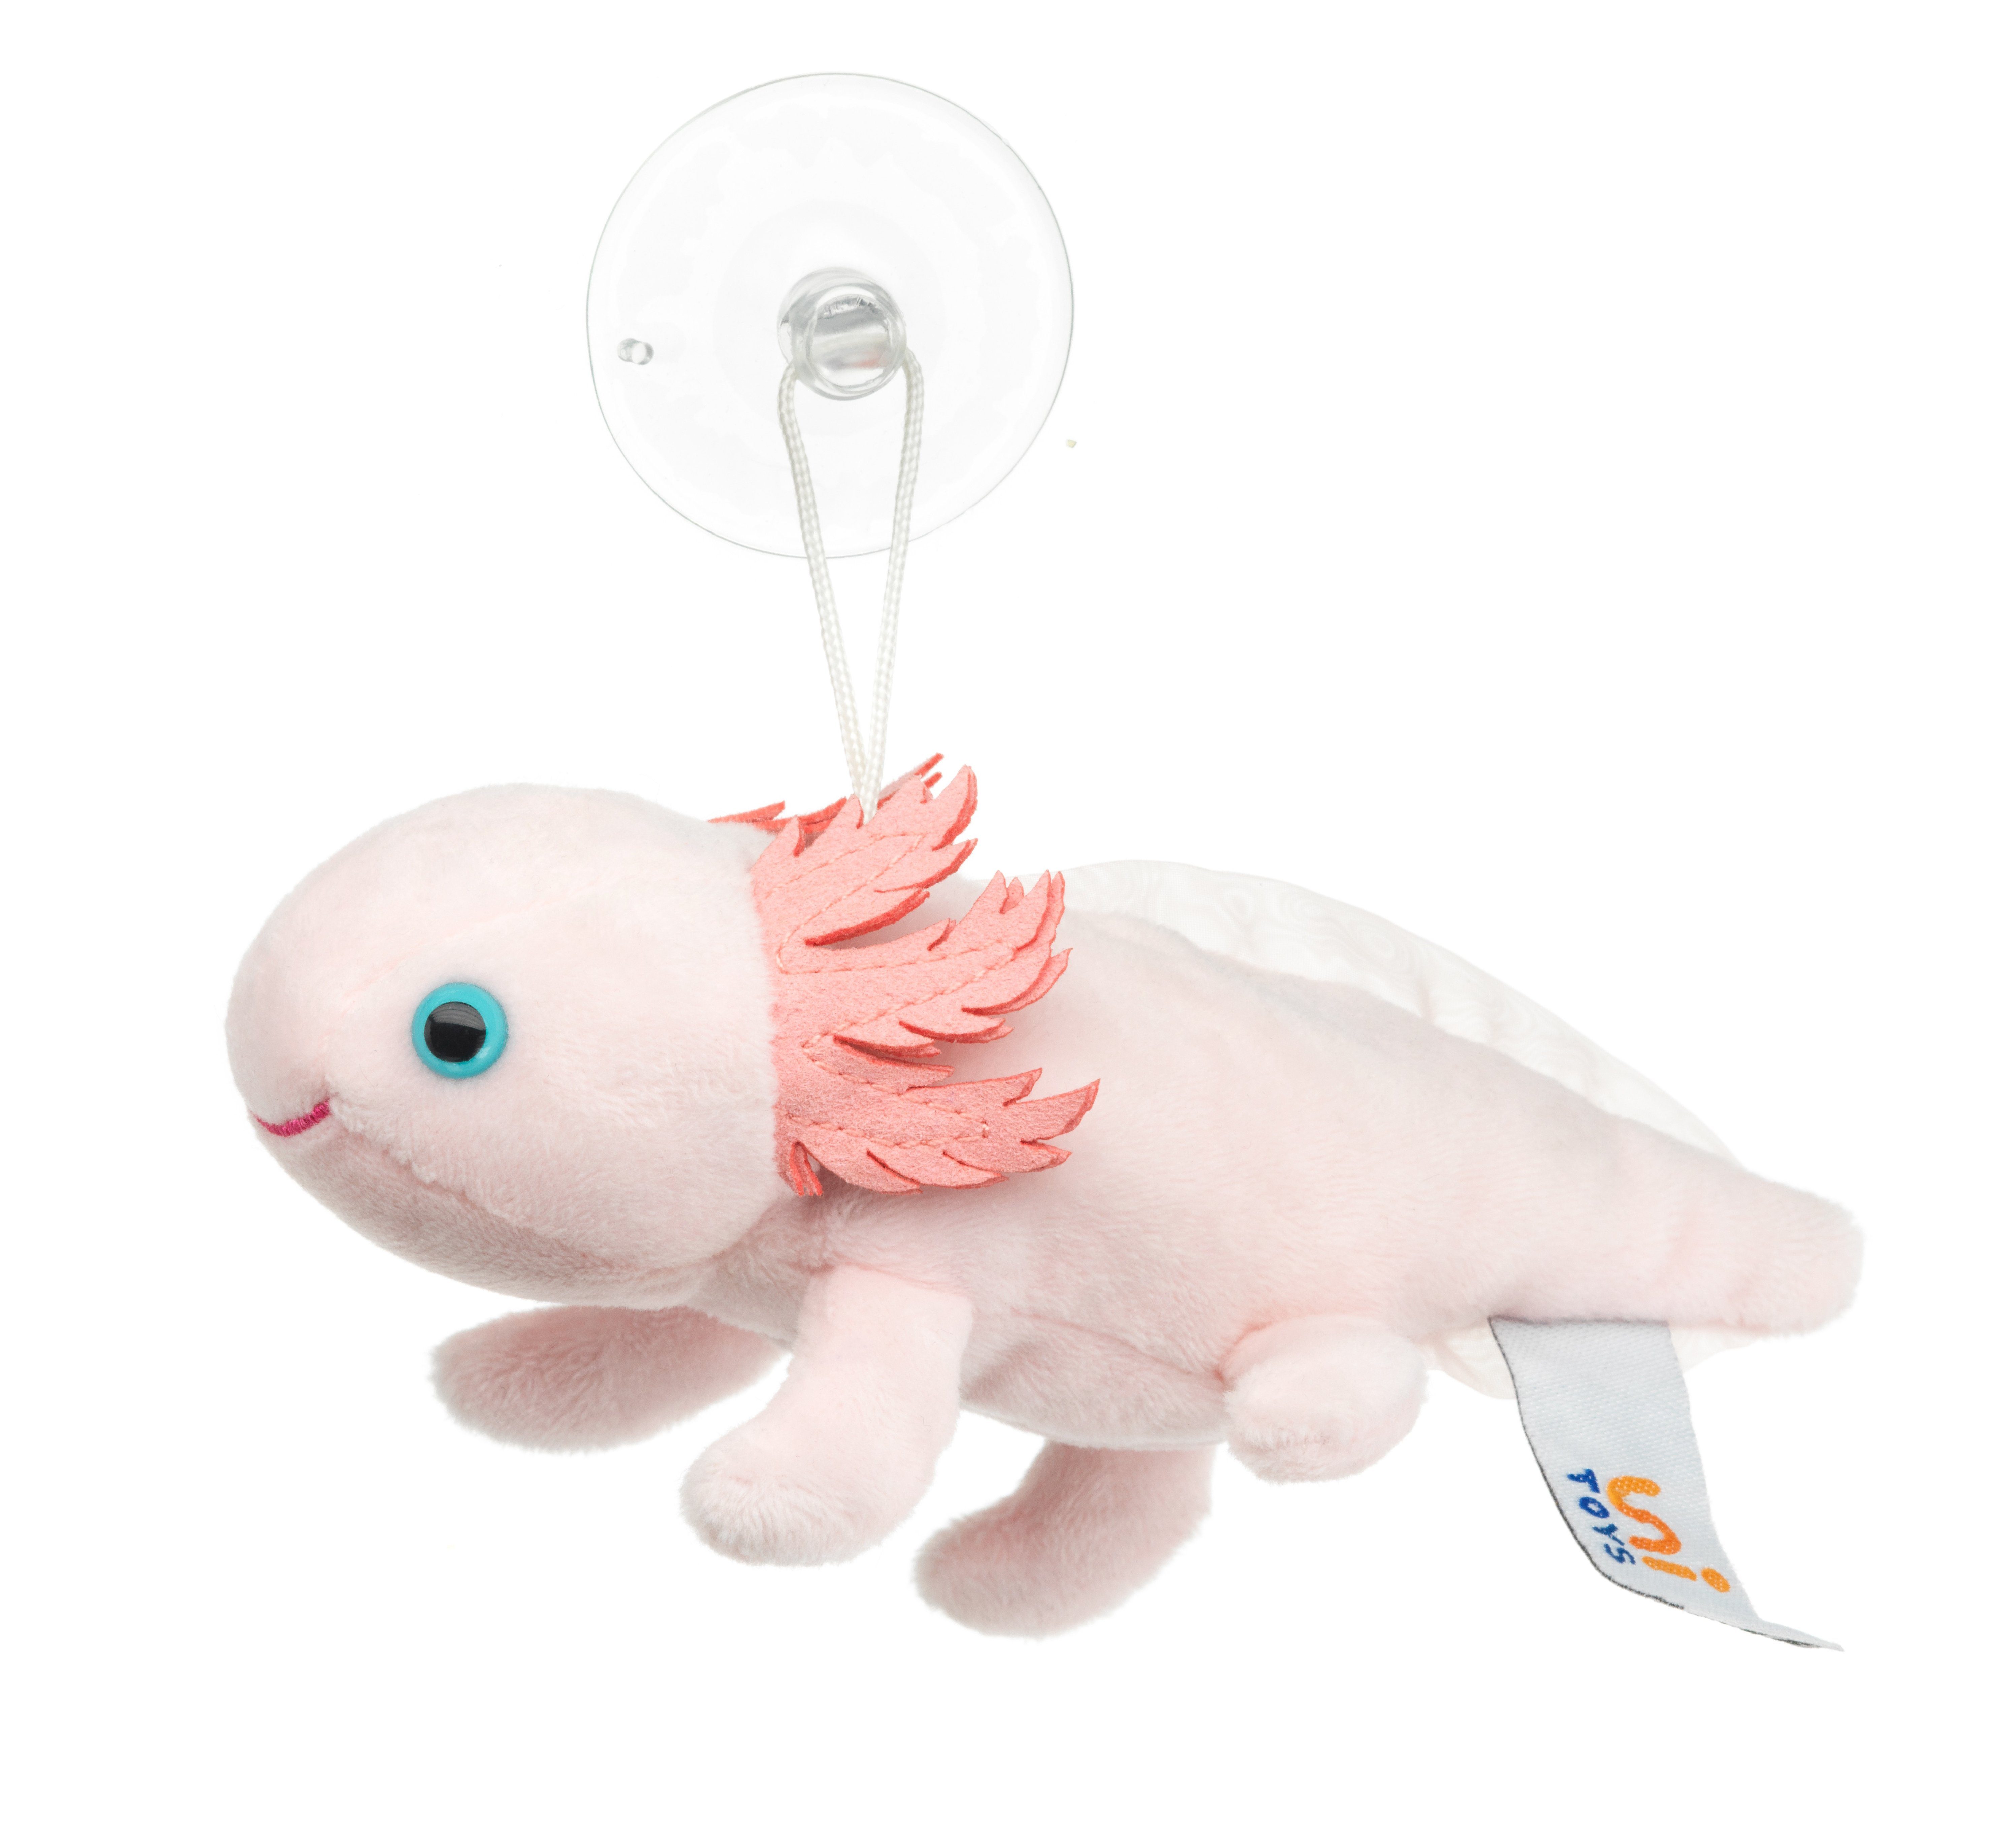 Uni-Toys Kuscheltier Axolotl - verschiedene Modelle - 15 cm (Länge) - Plüsch, Plüschtier, zu 100 % recyceltes Füllmaterial